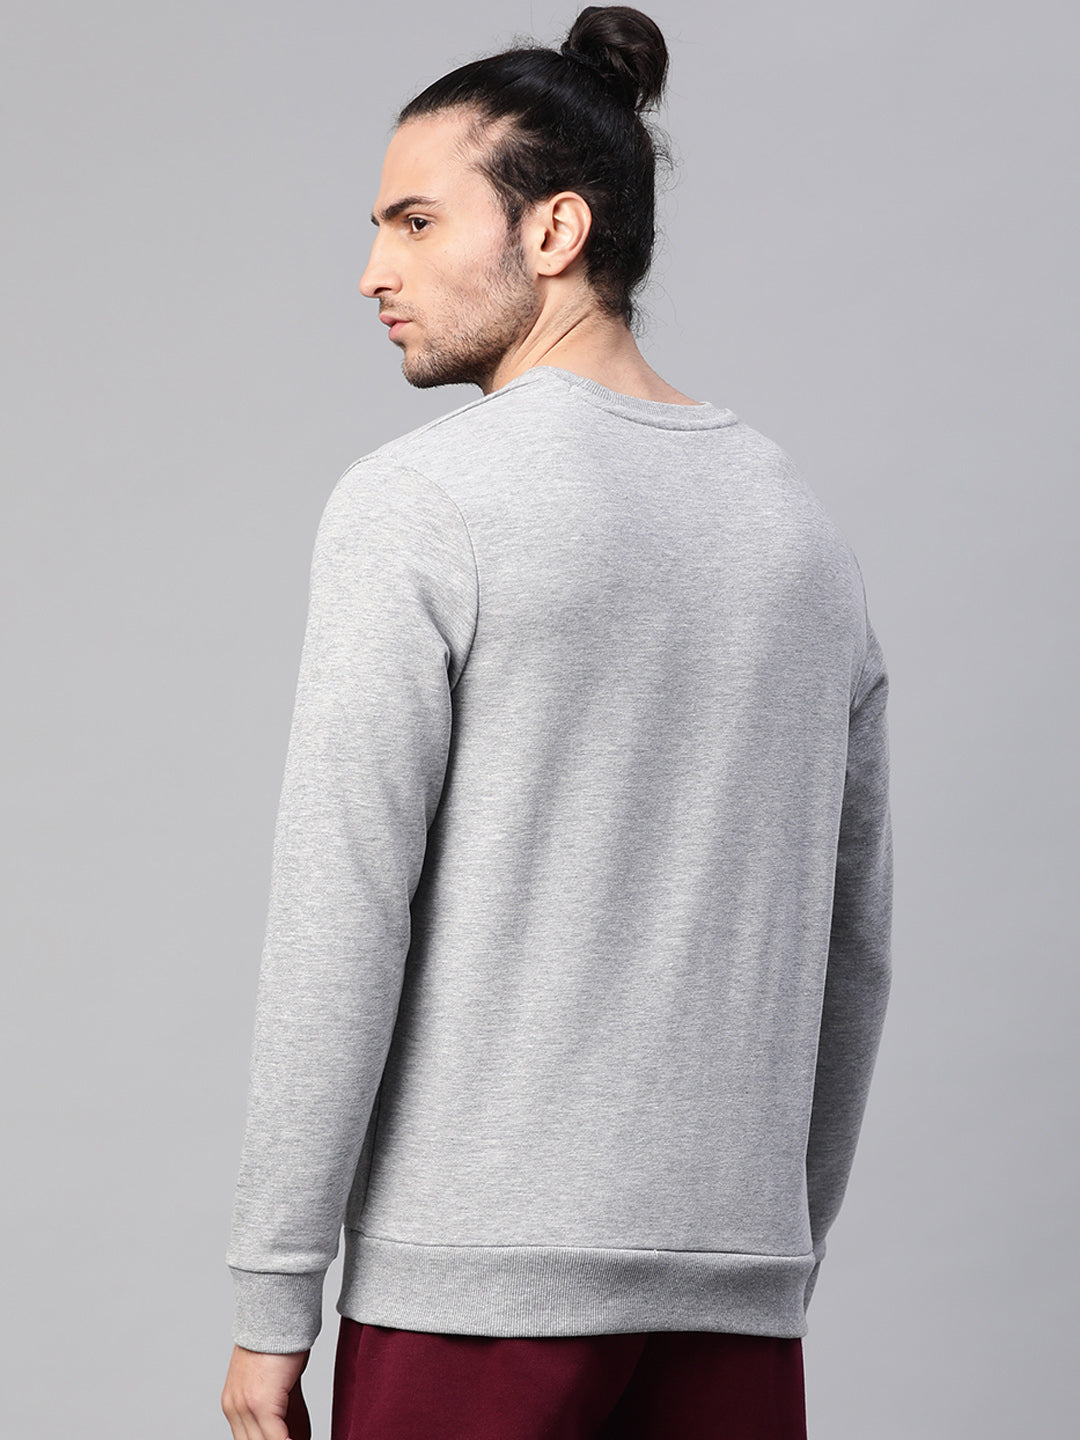 Alcis Men Solid Grey Sweatshirts